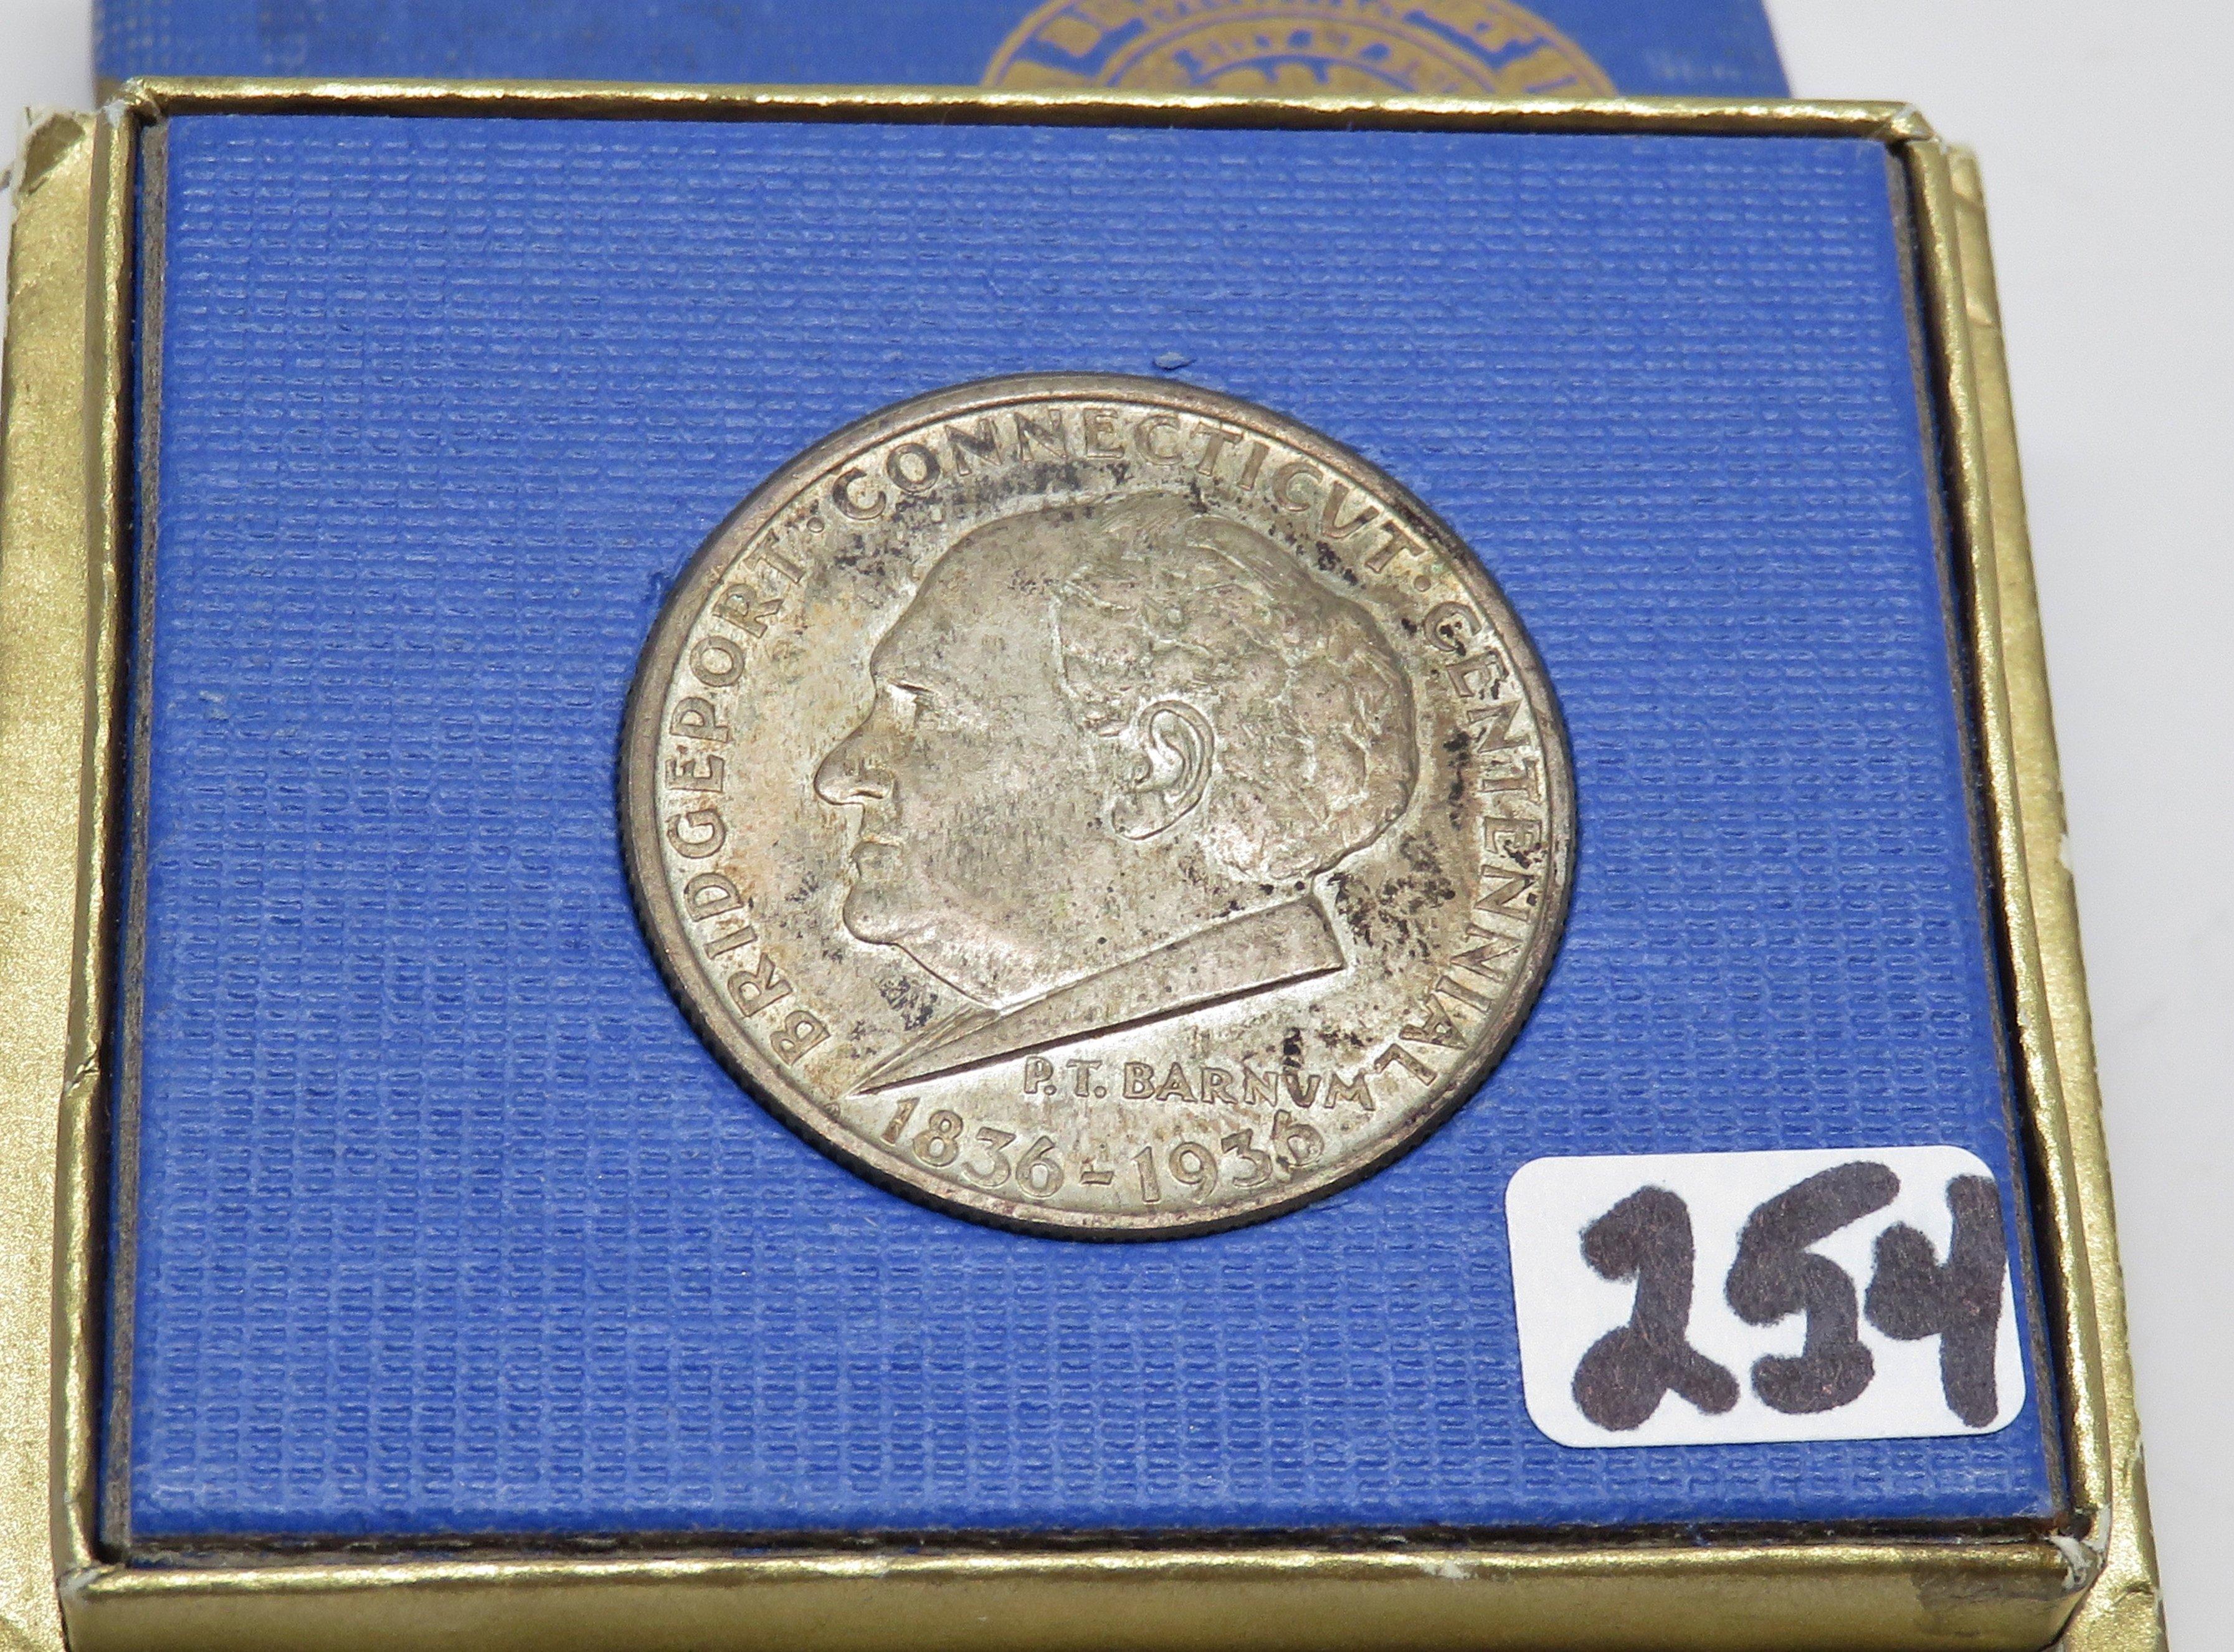 1936 Bridgeport Commemorative Half $ in original holder, toned.  Rare